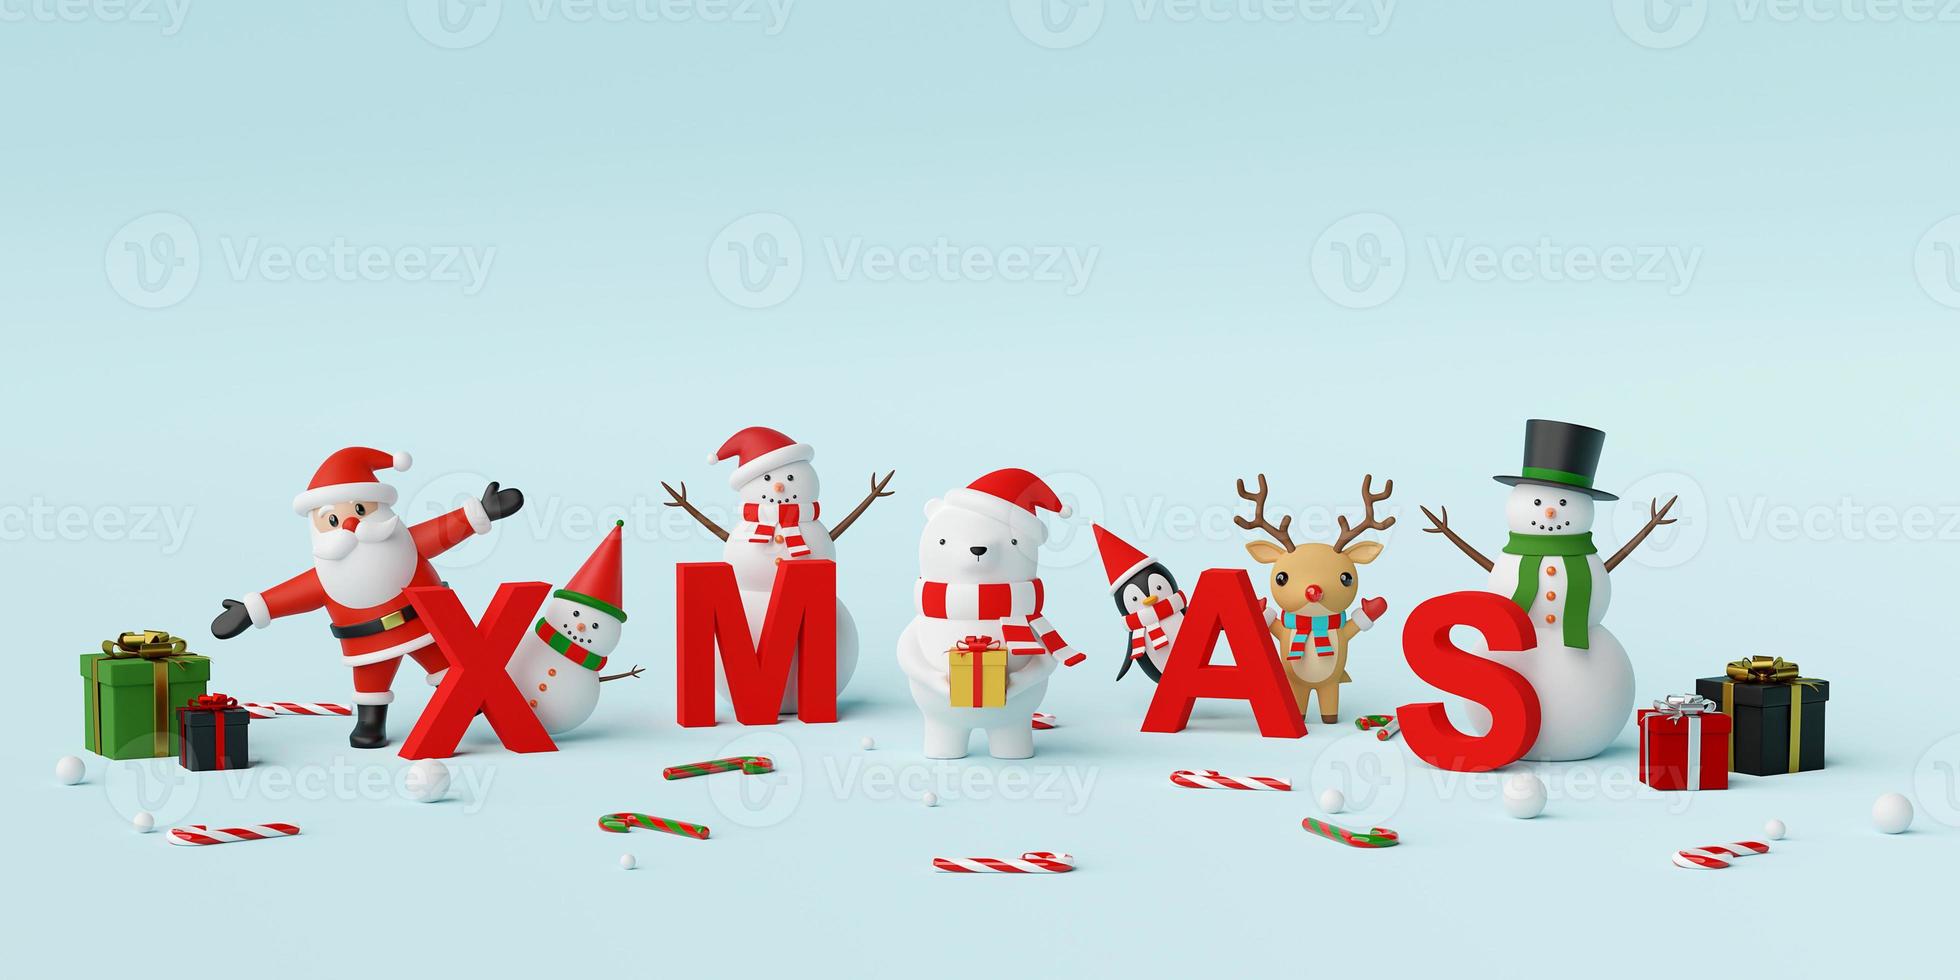 prettige kerstdagen en gelukkig nieuwjaar, kerstman en kerstkarakter met letters xmas, 3D-rendering foto